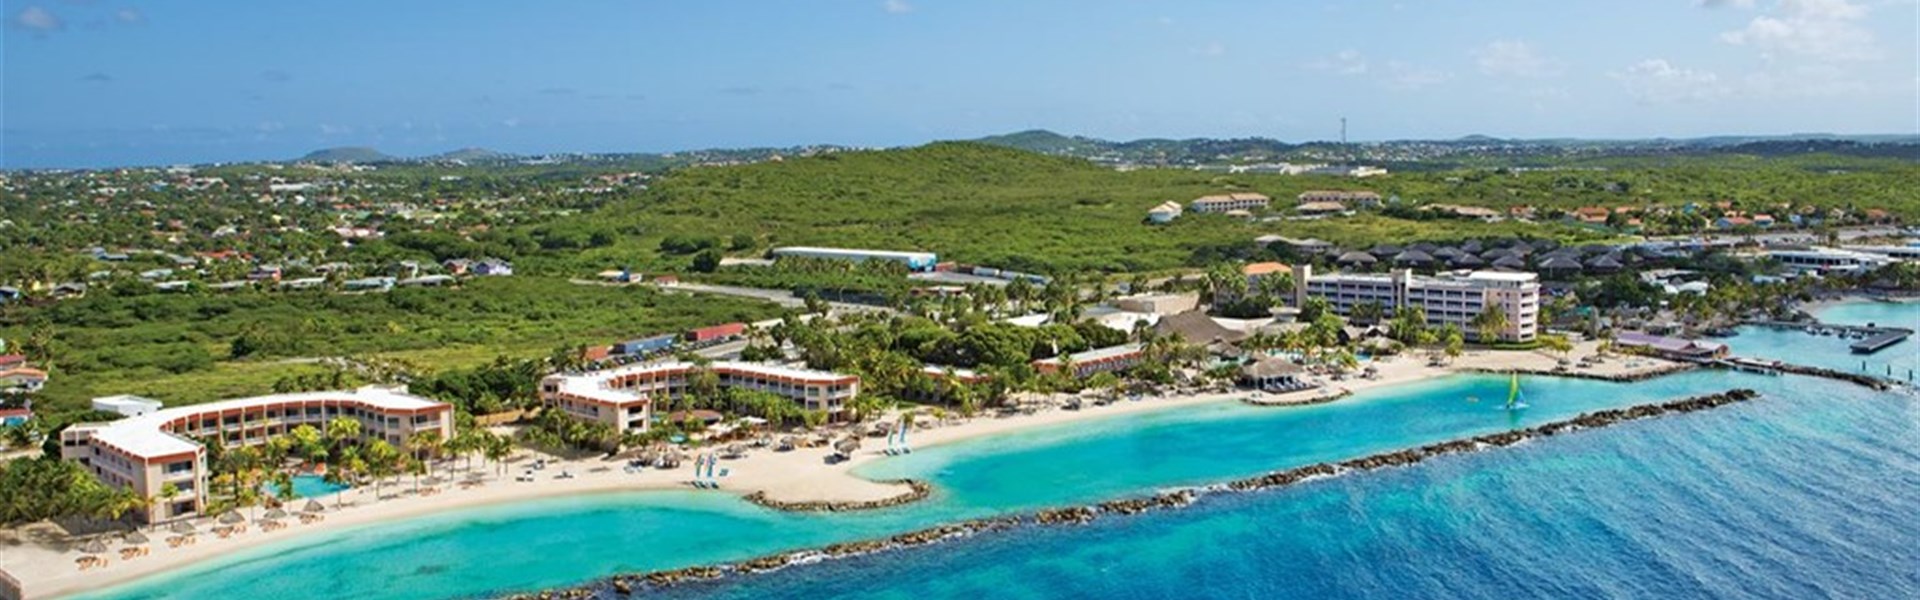 Sunscape Curaçao Resort, Spa & Casino - All Inclusive - 